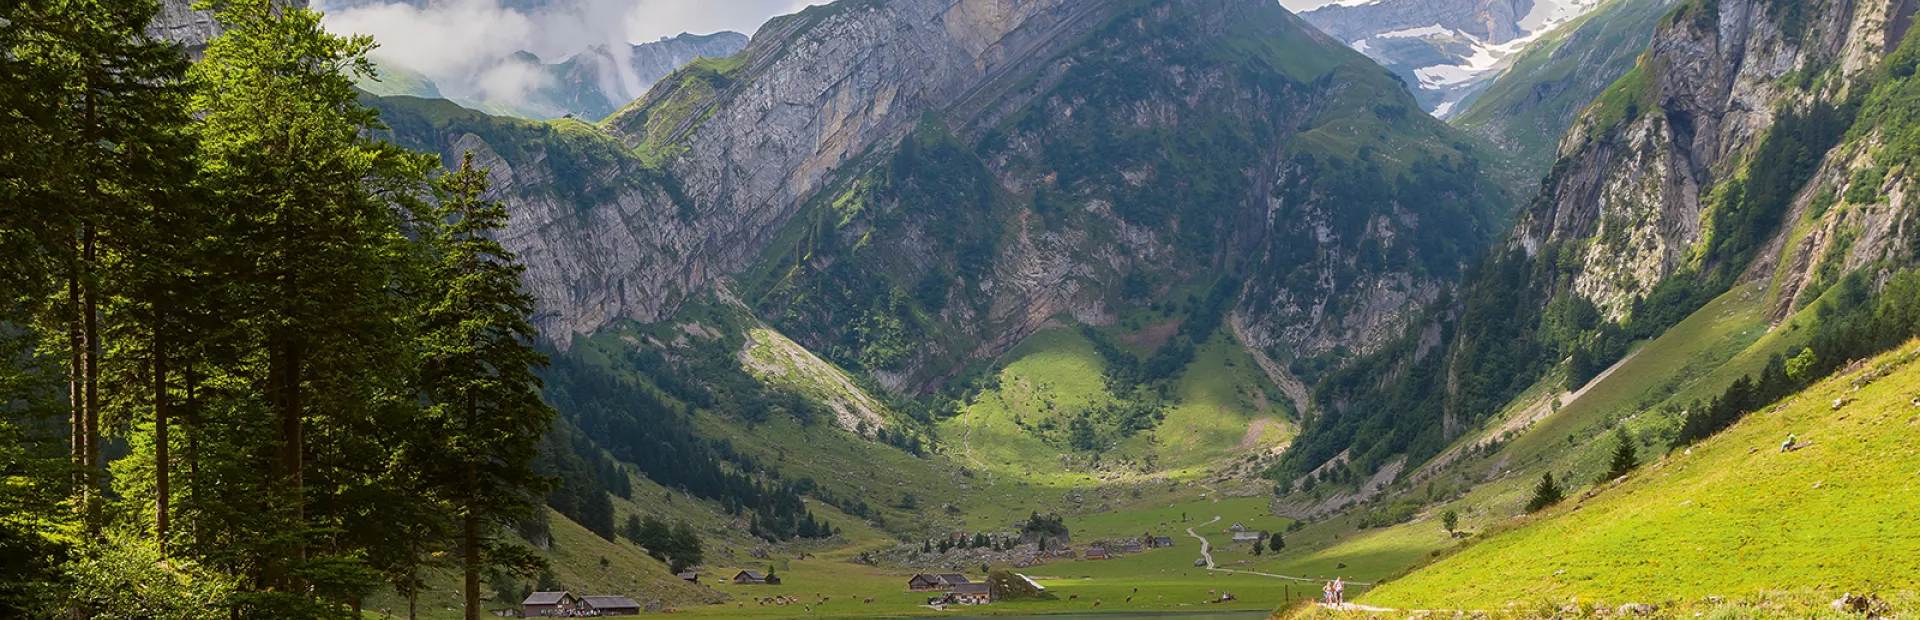 Bergsee in den Alpen, Schweiz – Umweltschutz Novartis / Lac de montagne en Suisse